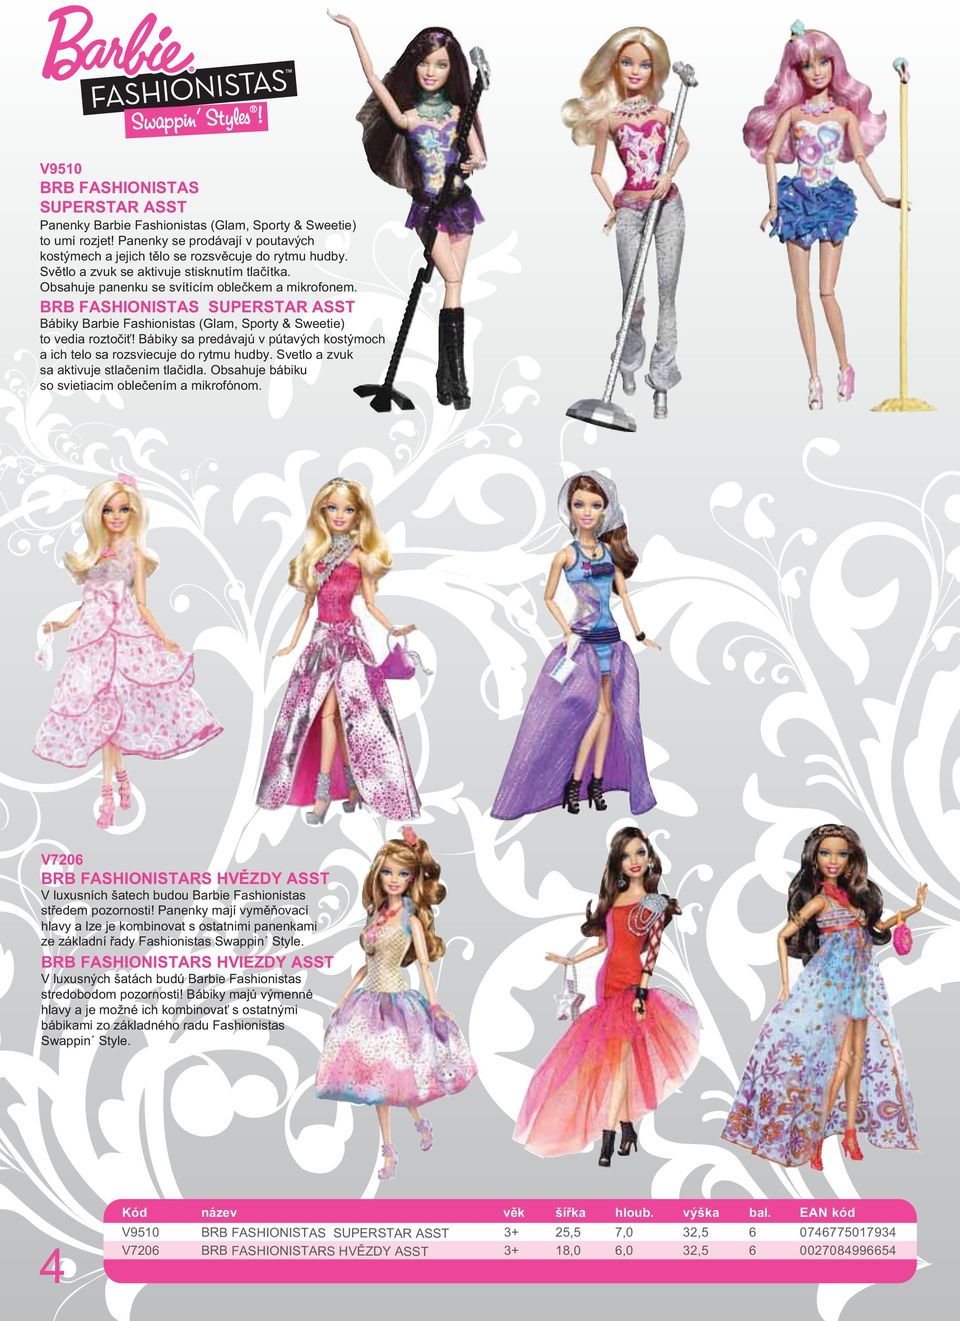 BRB FASHIONISTAS SUPERSTAR ASST Bábiky Barbie Fashionistas (Glam, Sporty & Sweetie) to vedia roztočiť! Bábiky sa predávajú v pútavých kostýmoch a ich telo sa rozsviecuje do rytmu hudby.